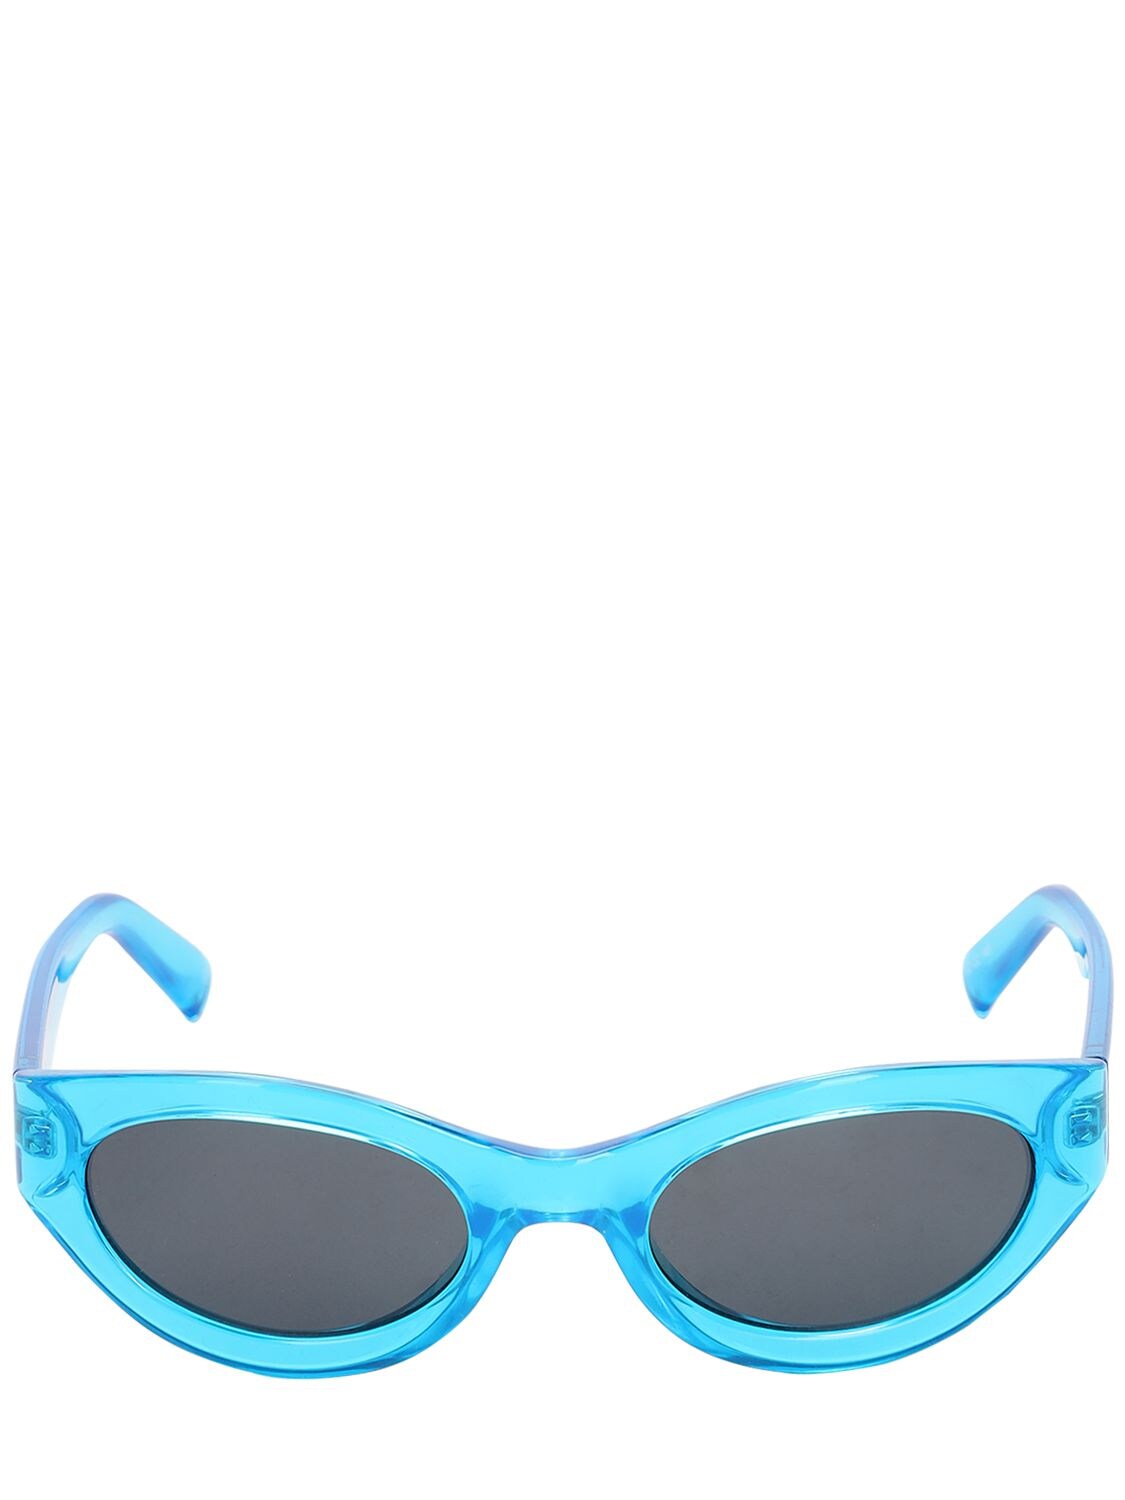 Le Specs Body Bumpin Round Neon Sunglasses In Blue,black